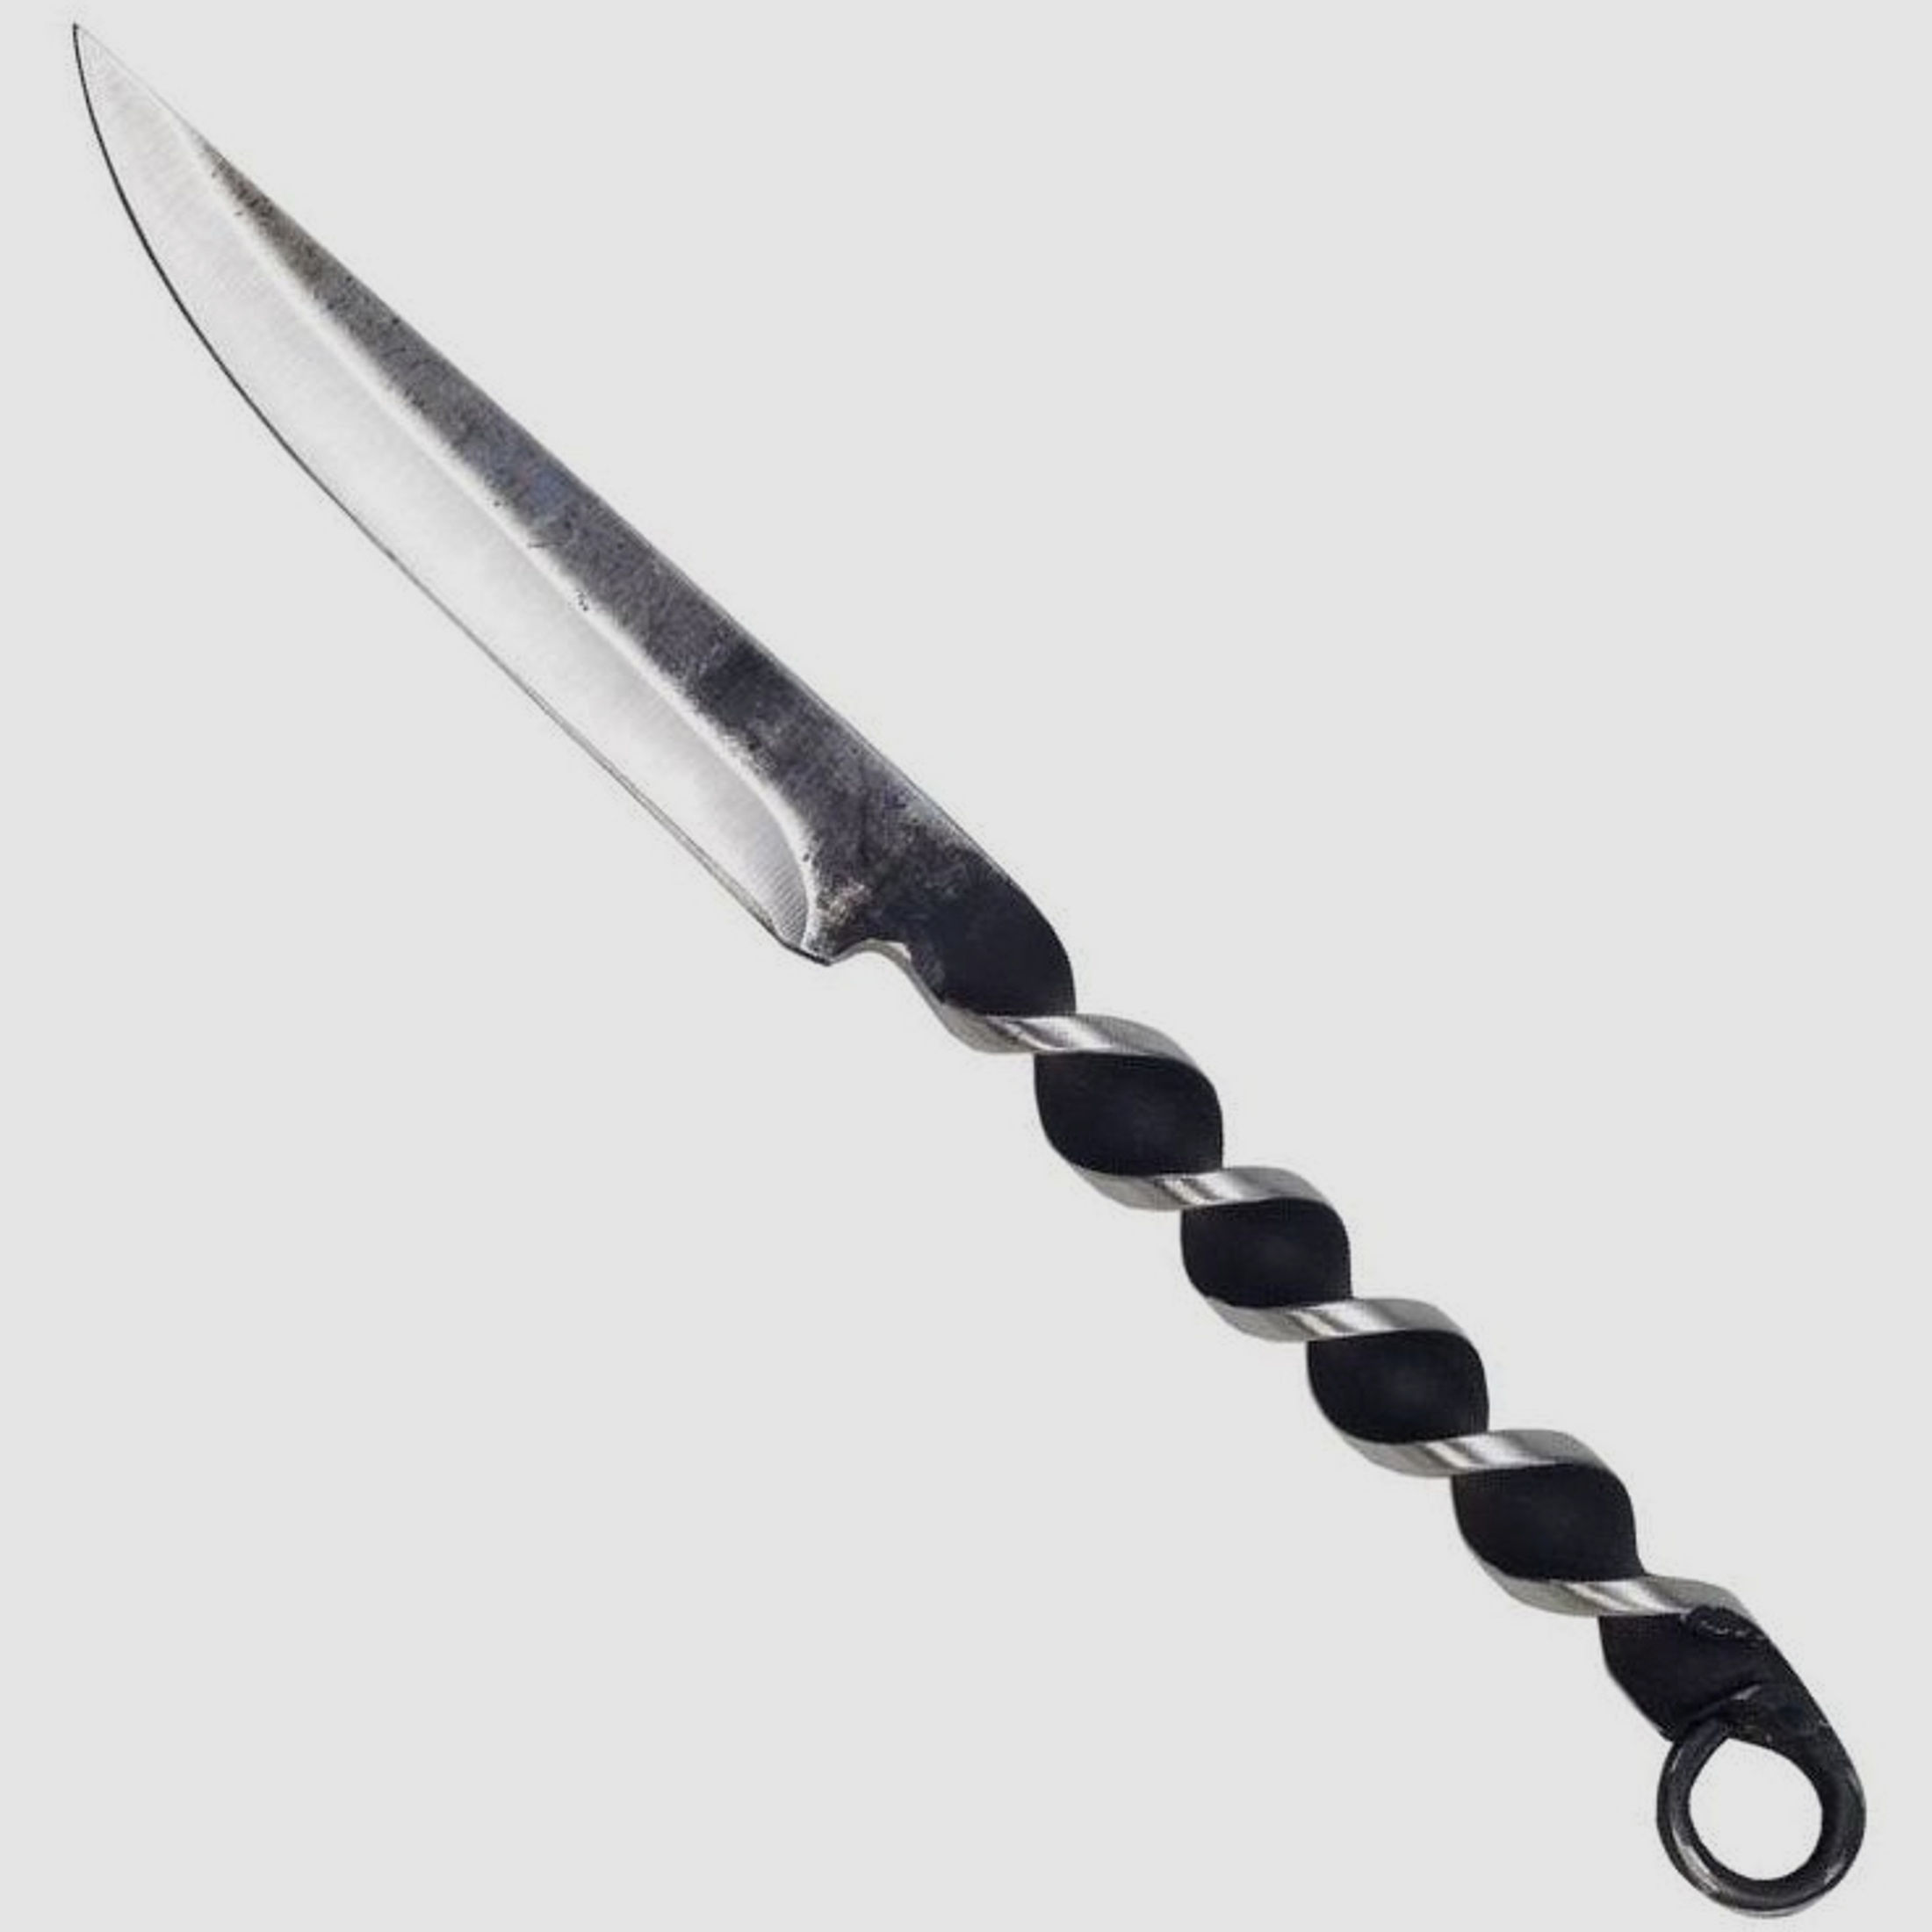 geschmiedetes Mittelalter-Messer mit gedrehtem Griff